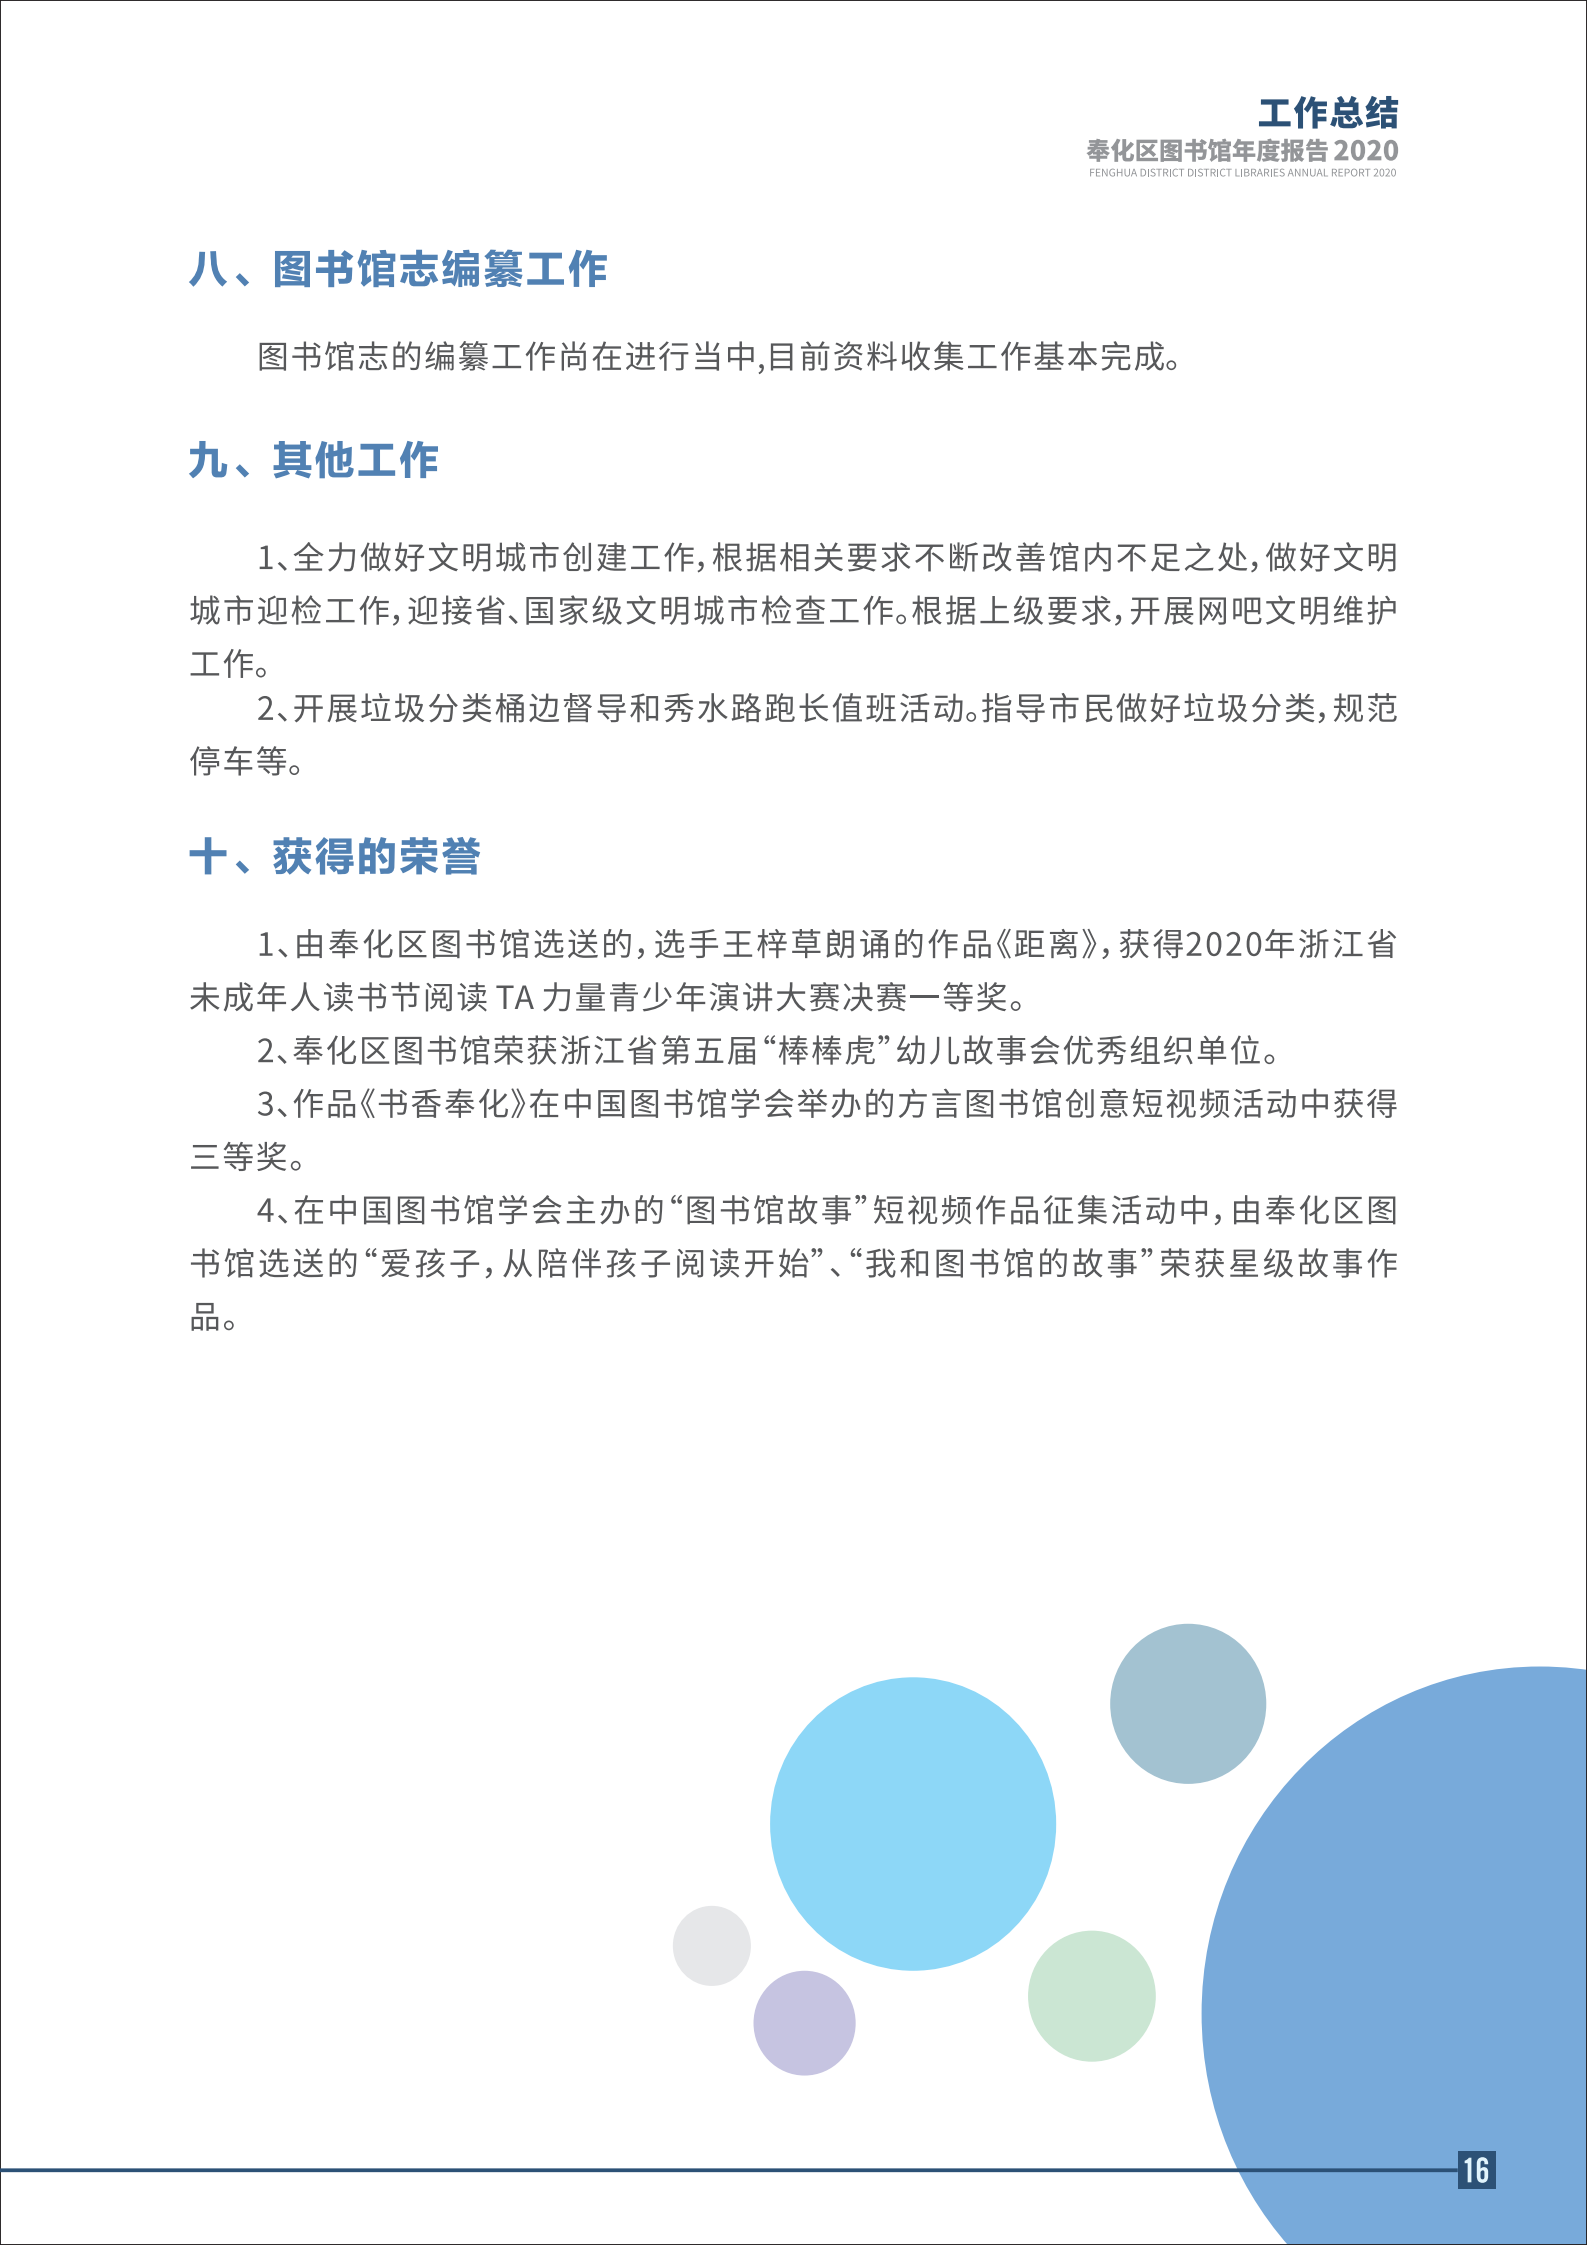 宁波市奉化区图书馆2020年年度报告 终稿_16.png